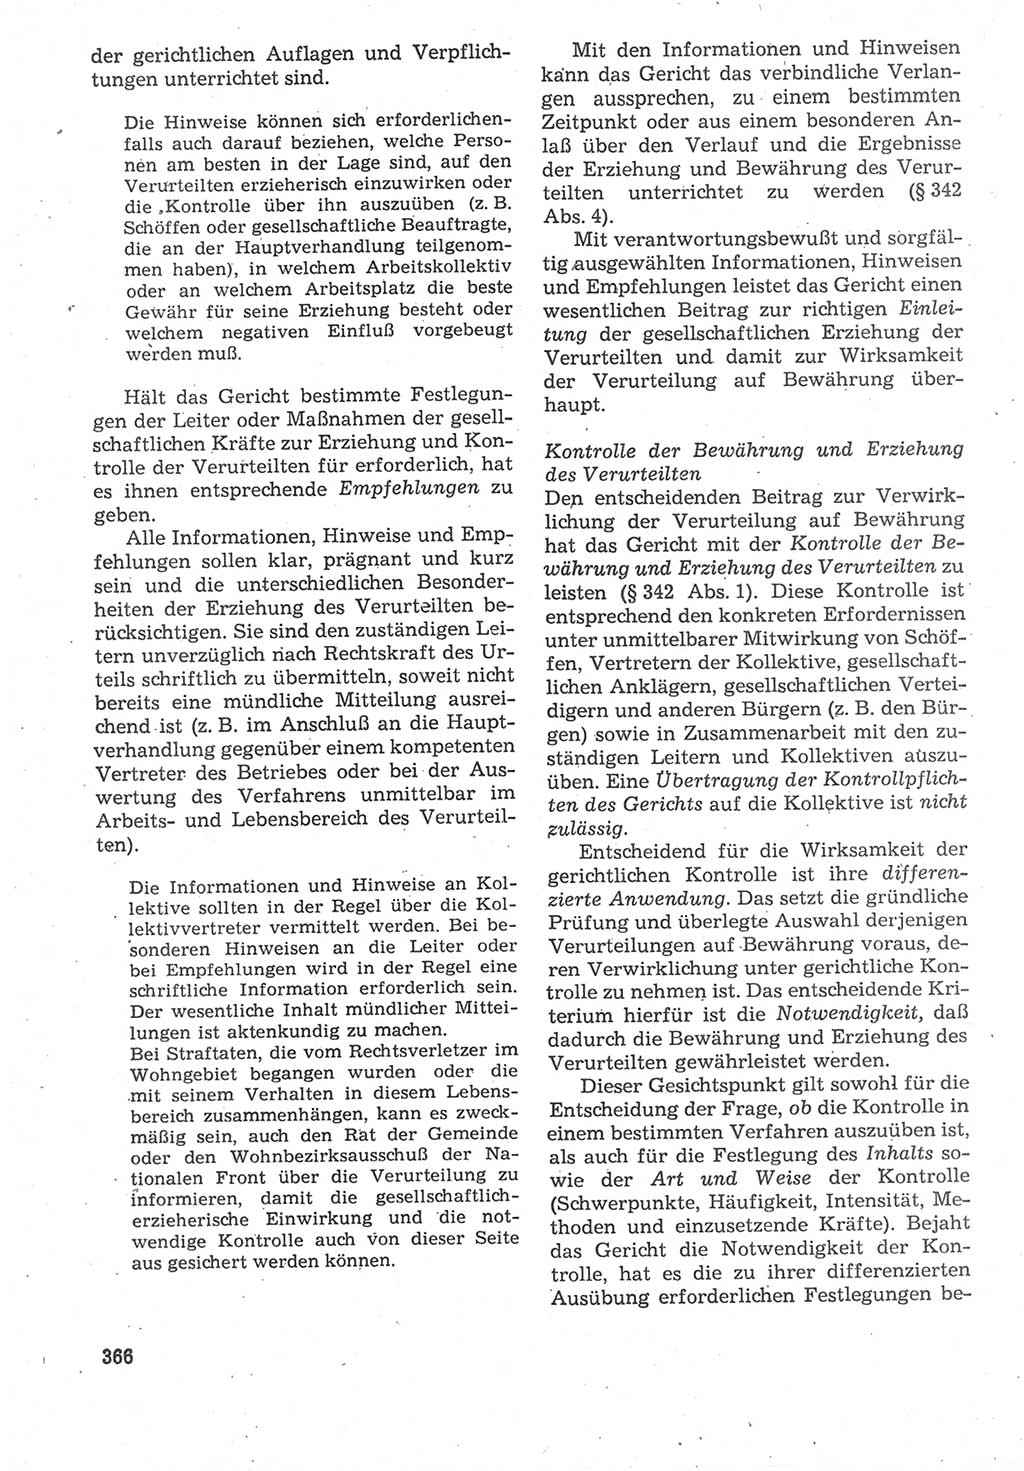 Strafverfahrensrecht [Deutsche Demokratische Republik (DDR)], Lehrbuch 1987, Seite 366 (Strafverf.-R. DDR Lb. 1987, S. 366)